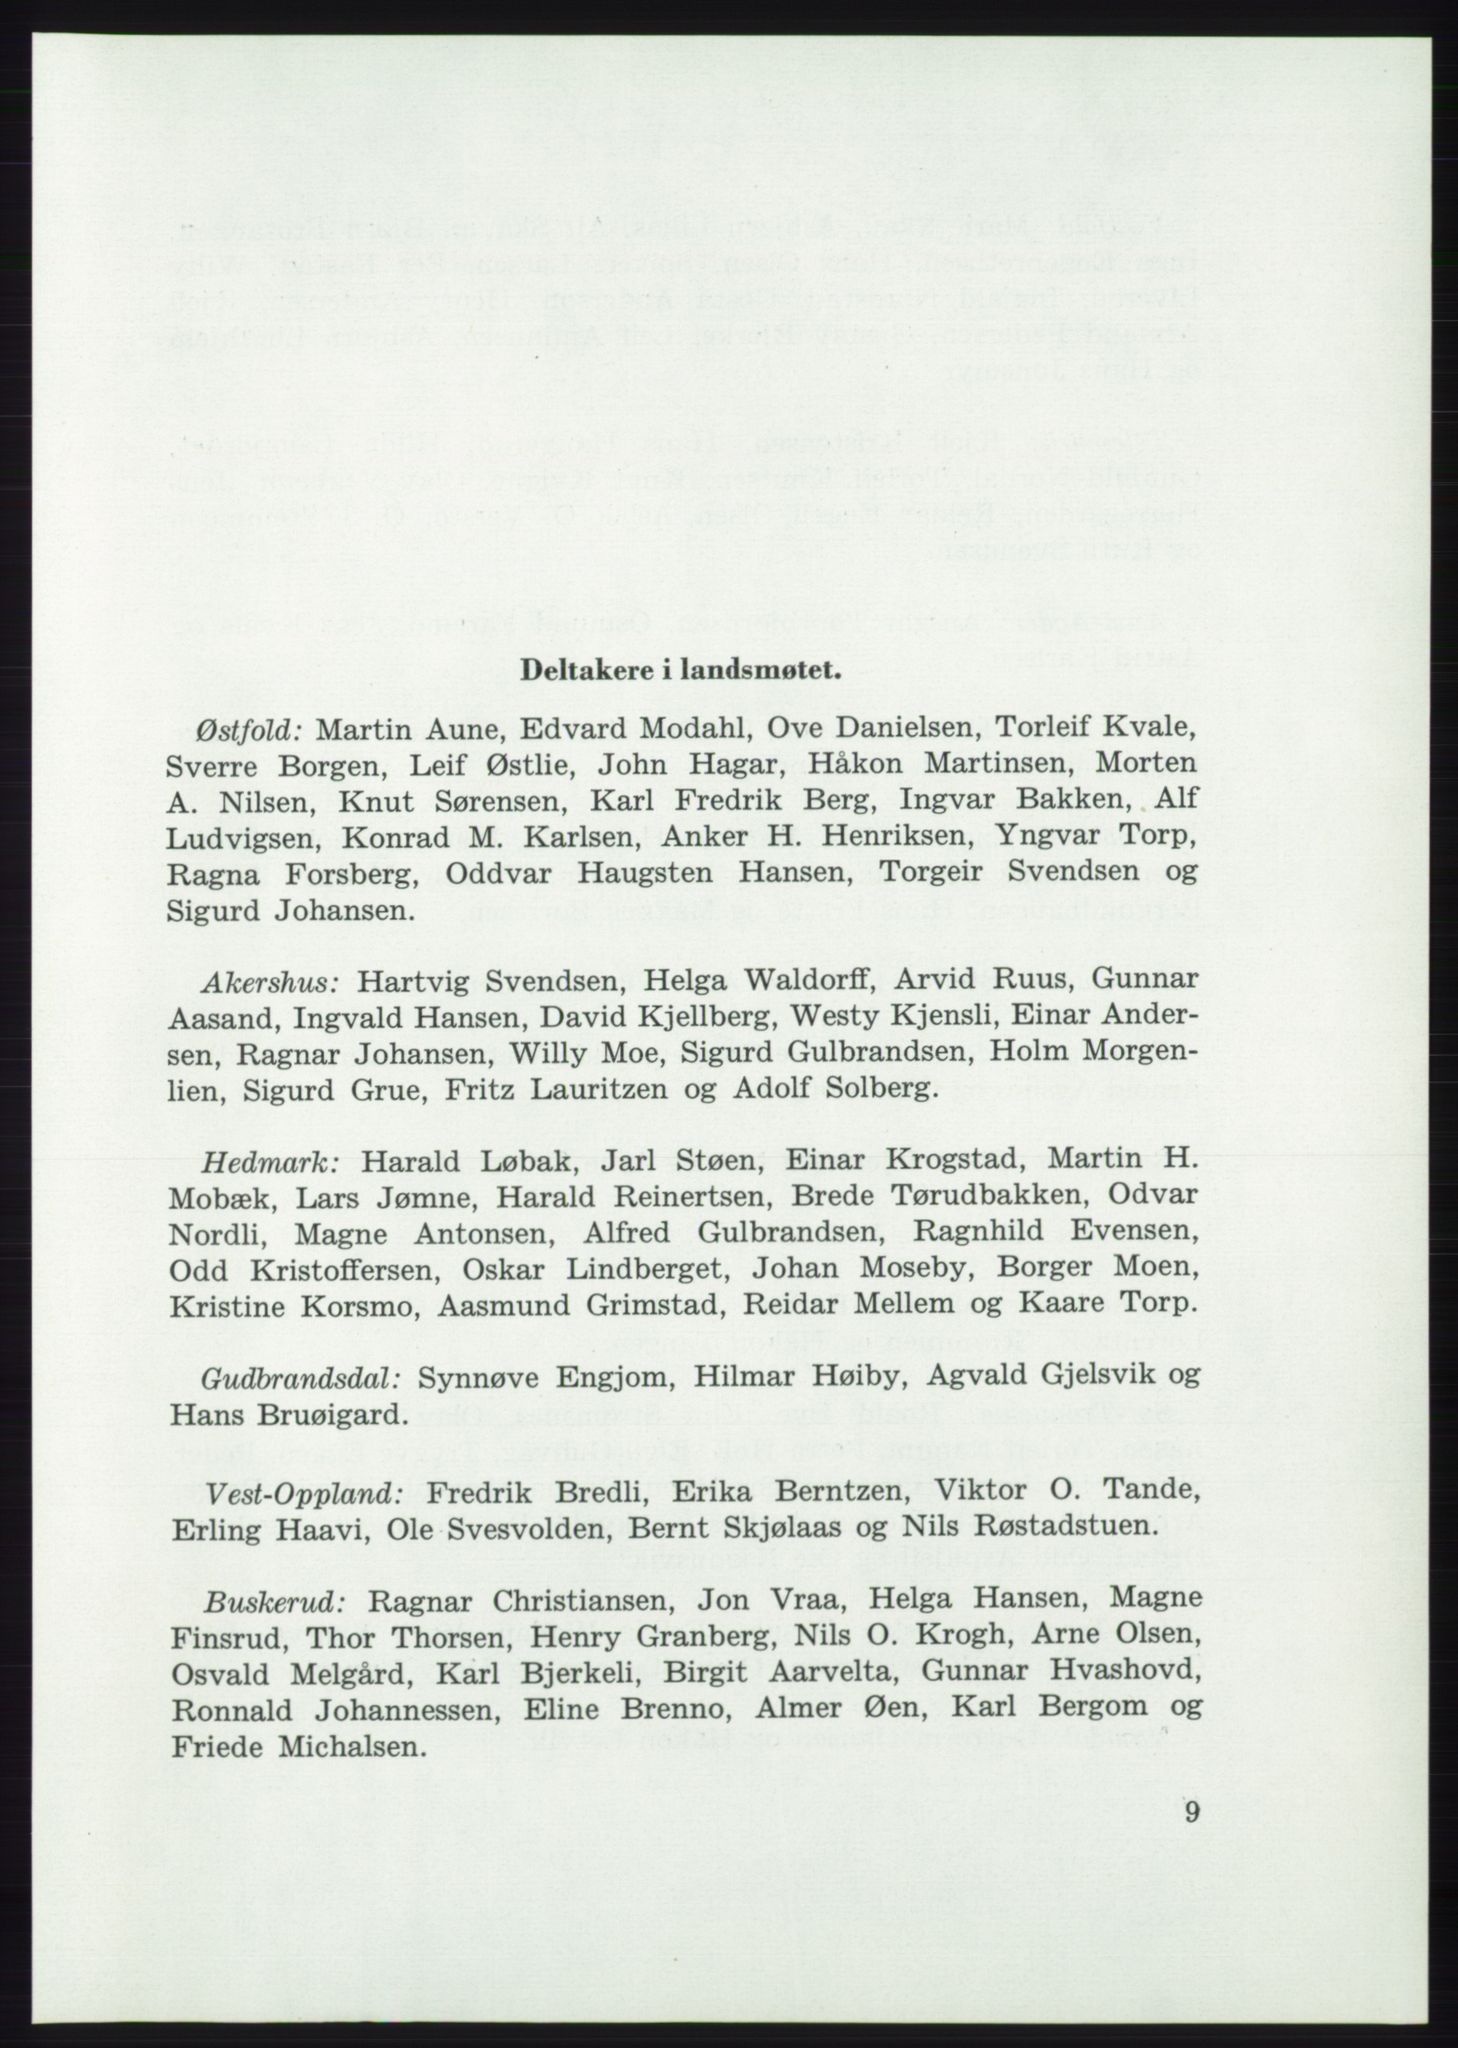 Det norske Arbeiderparti - publikasjoner, AAB/-/-/-: Protokoll over forhandlingene på det 37. ordinære landsmøte 7.-9. mai 1959 i Oslo, 1959, s. 9